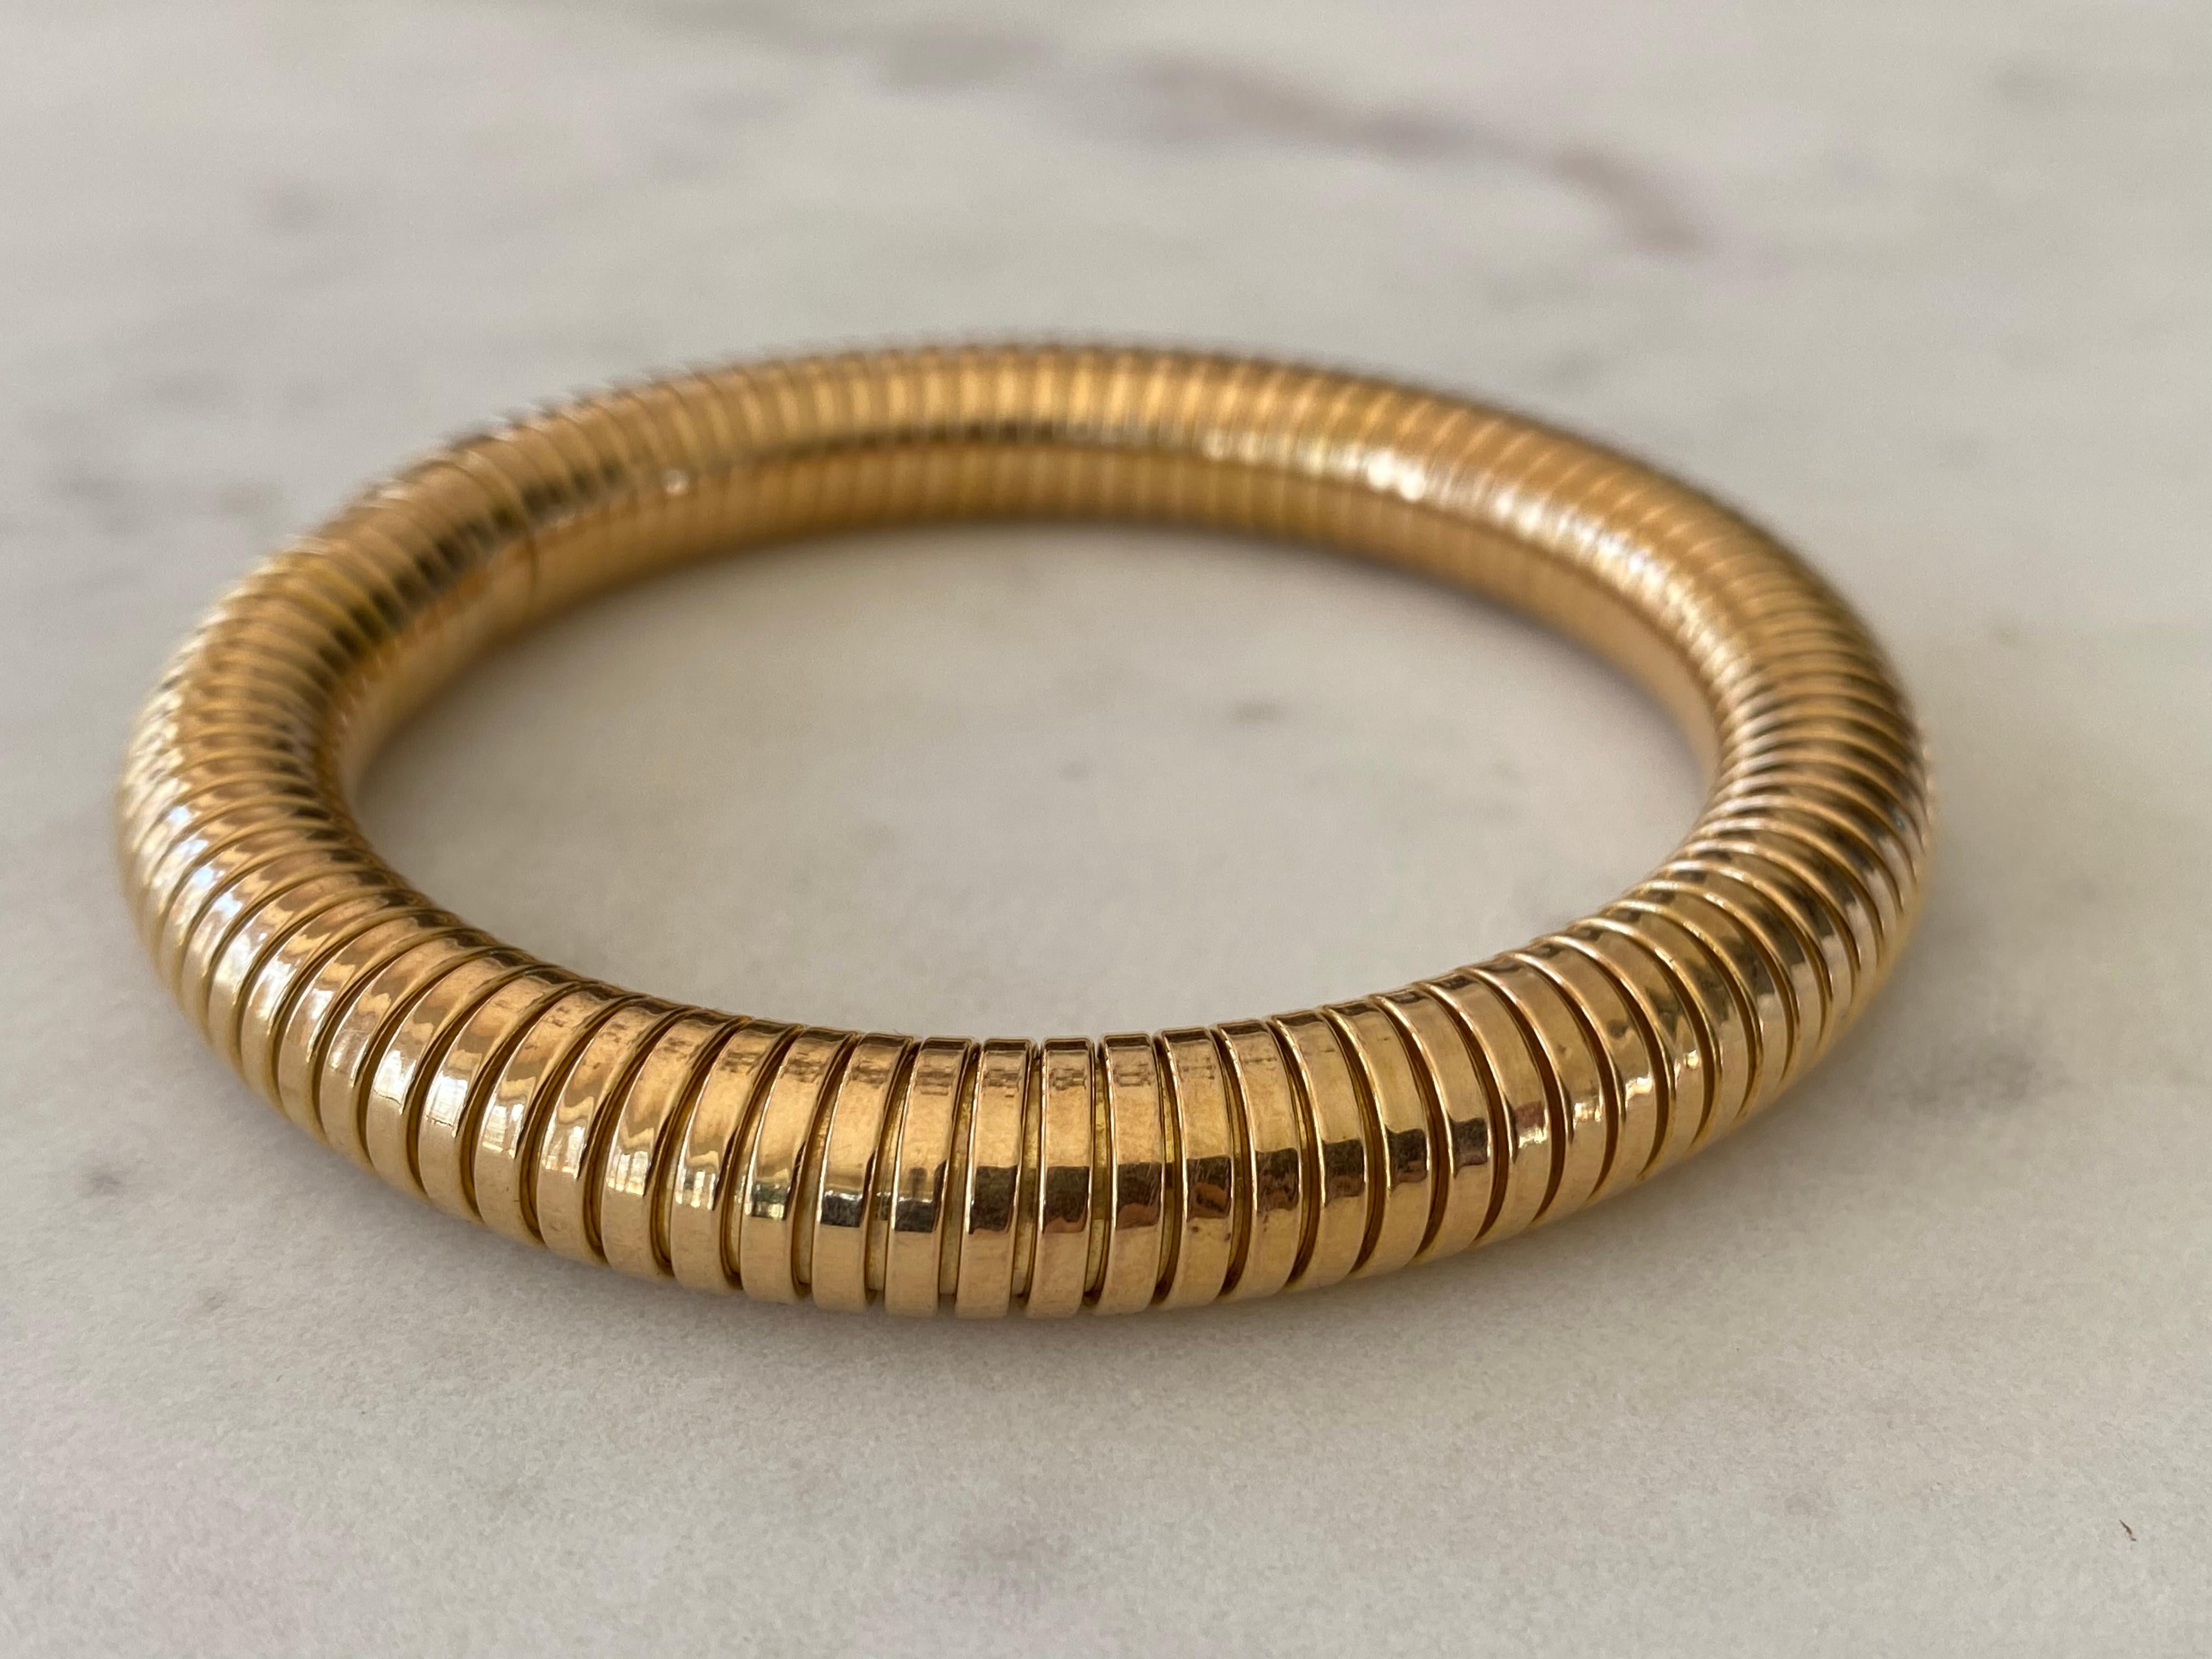 Datant des années 1940, cet élégant bracelet bangle extensible est fabriqué en or rose 18 carats dans le style classique des tuyaux de gaz de l'époque. Le bracelet mesure 7 pouces. 


